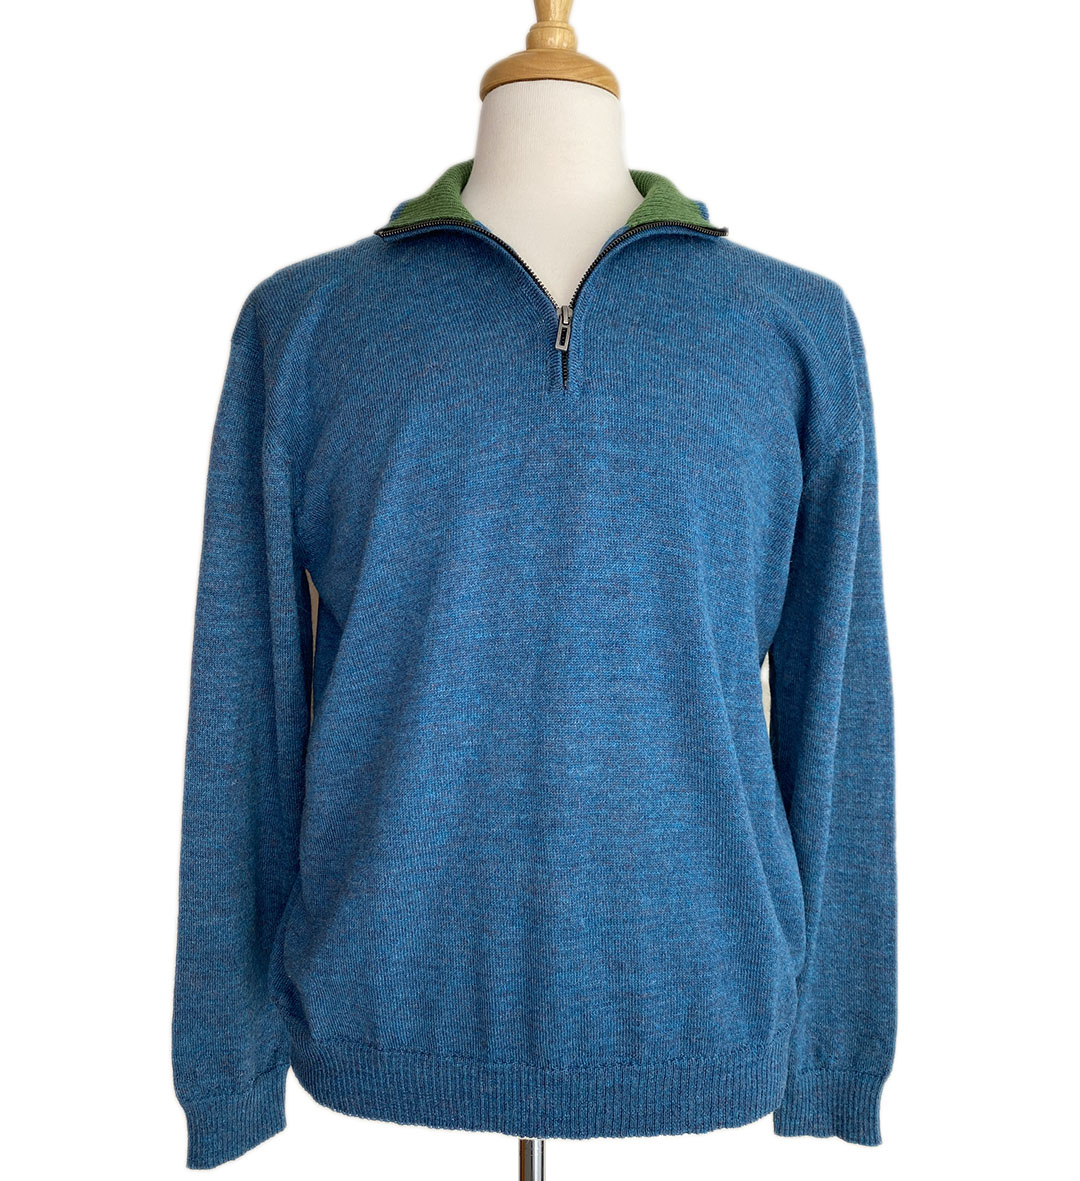 Brent Half Zip Sweater - Blue/Green -1